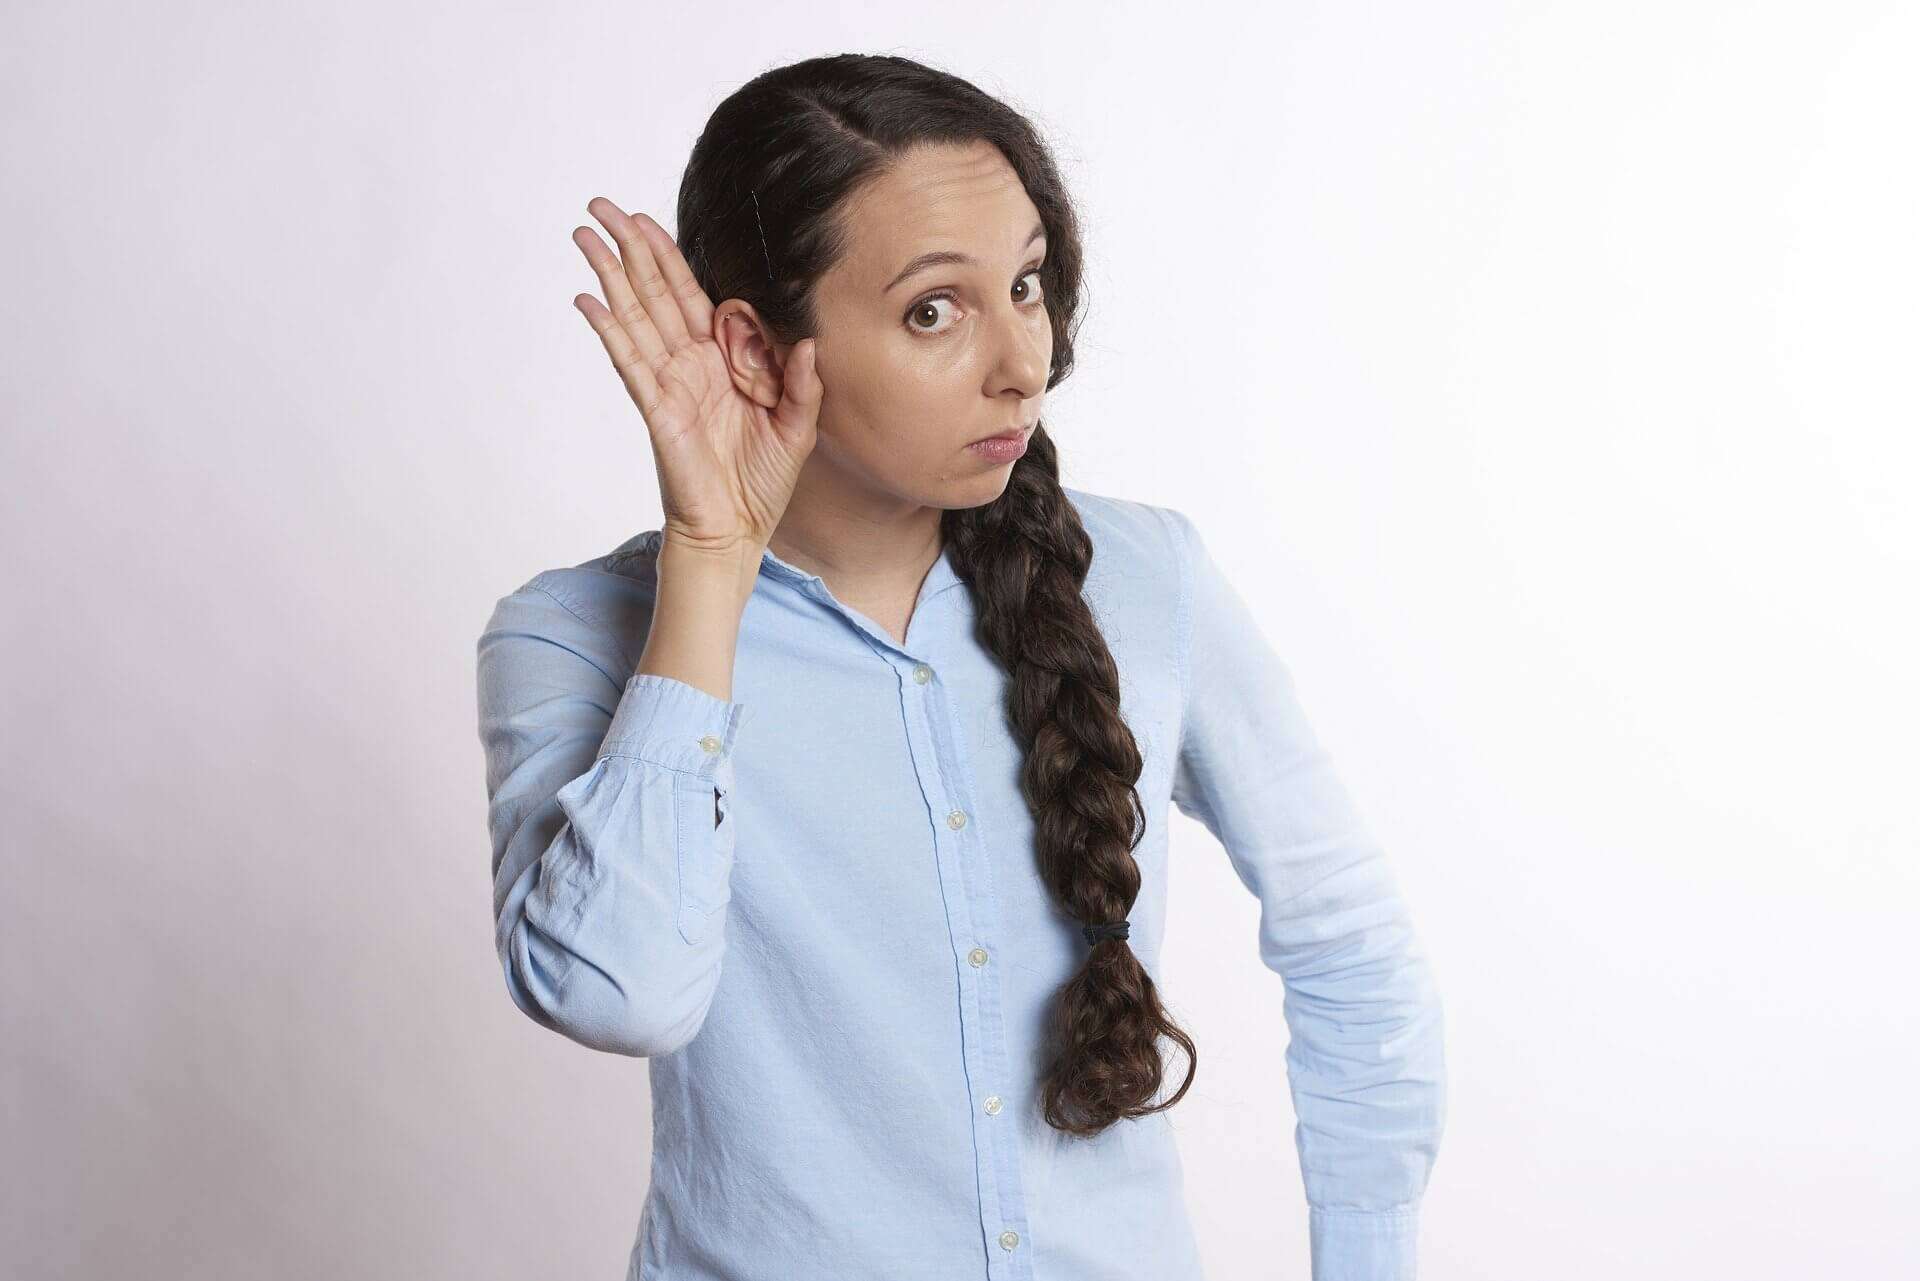 Ratgeber schlechtes Hören, Hörsturz, Tinnitus, Geräuschempfindlichkeit, durch Watte hören